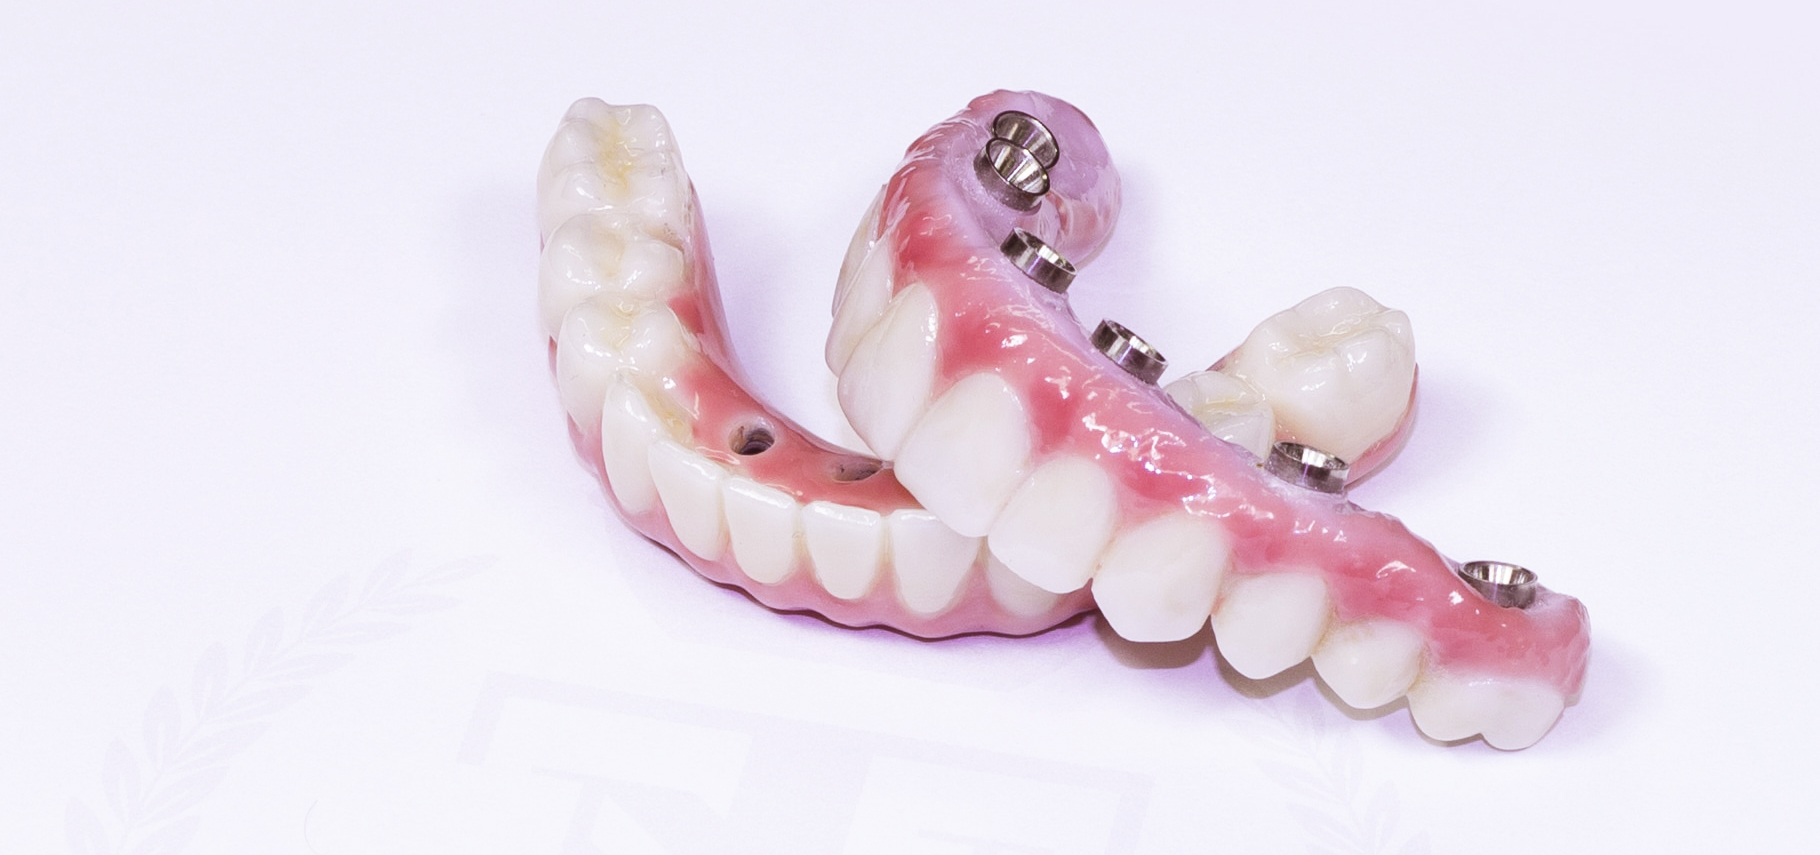 7 methods for Dental Implants